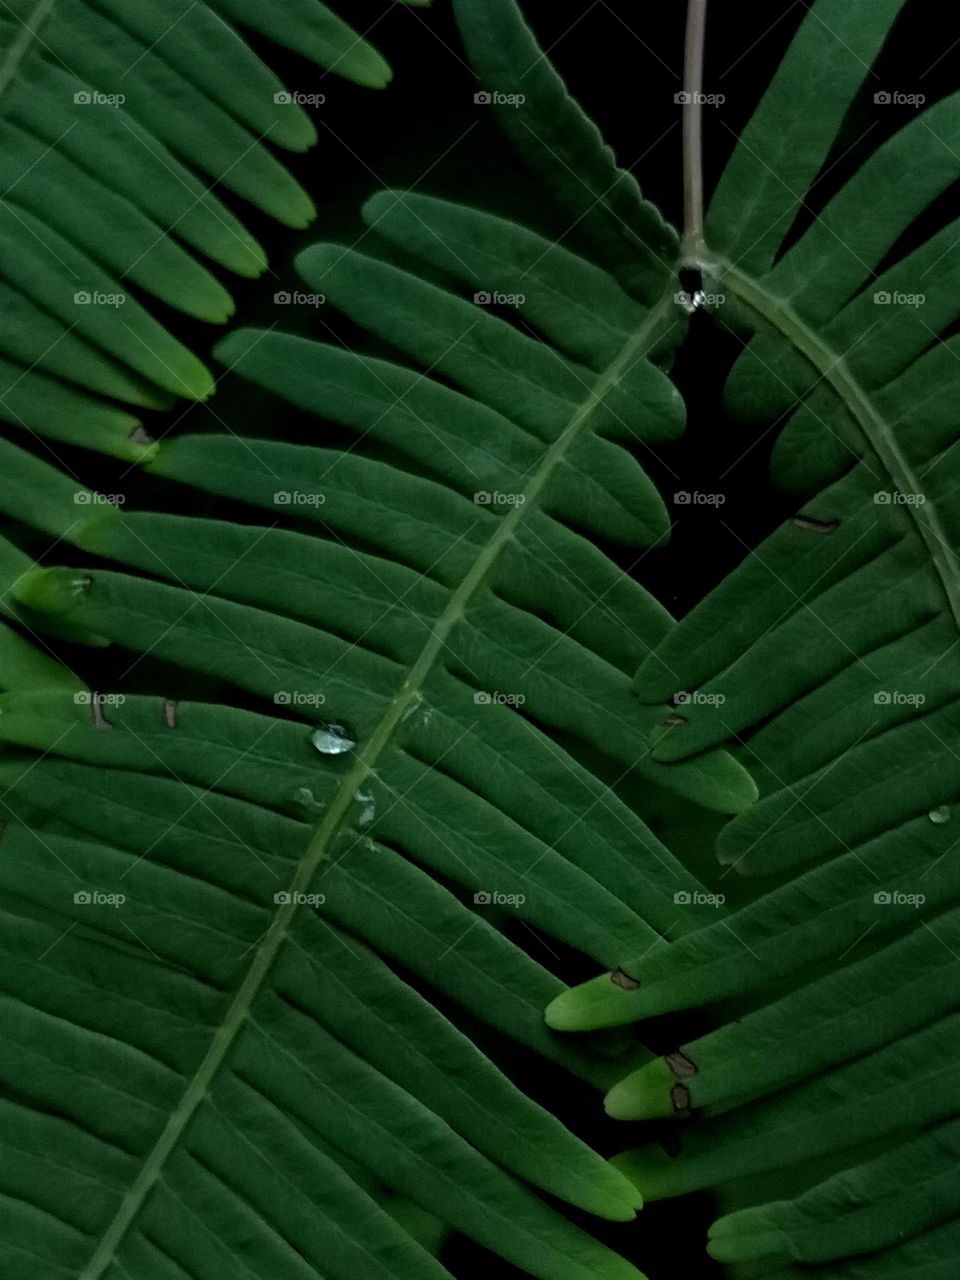 Raindrops on the leaf.